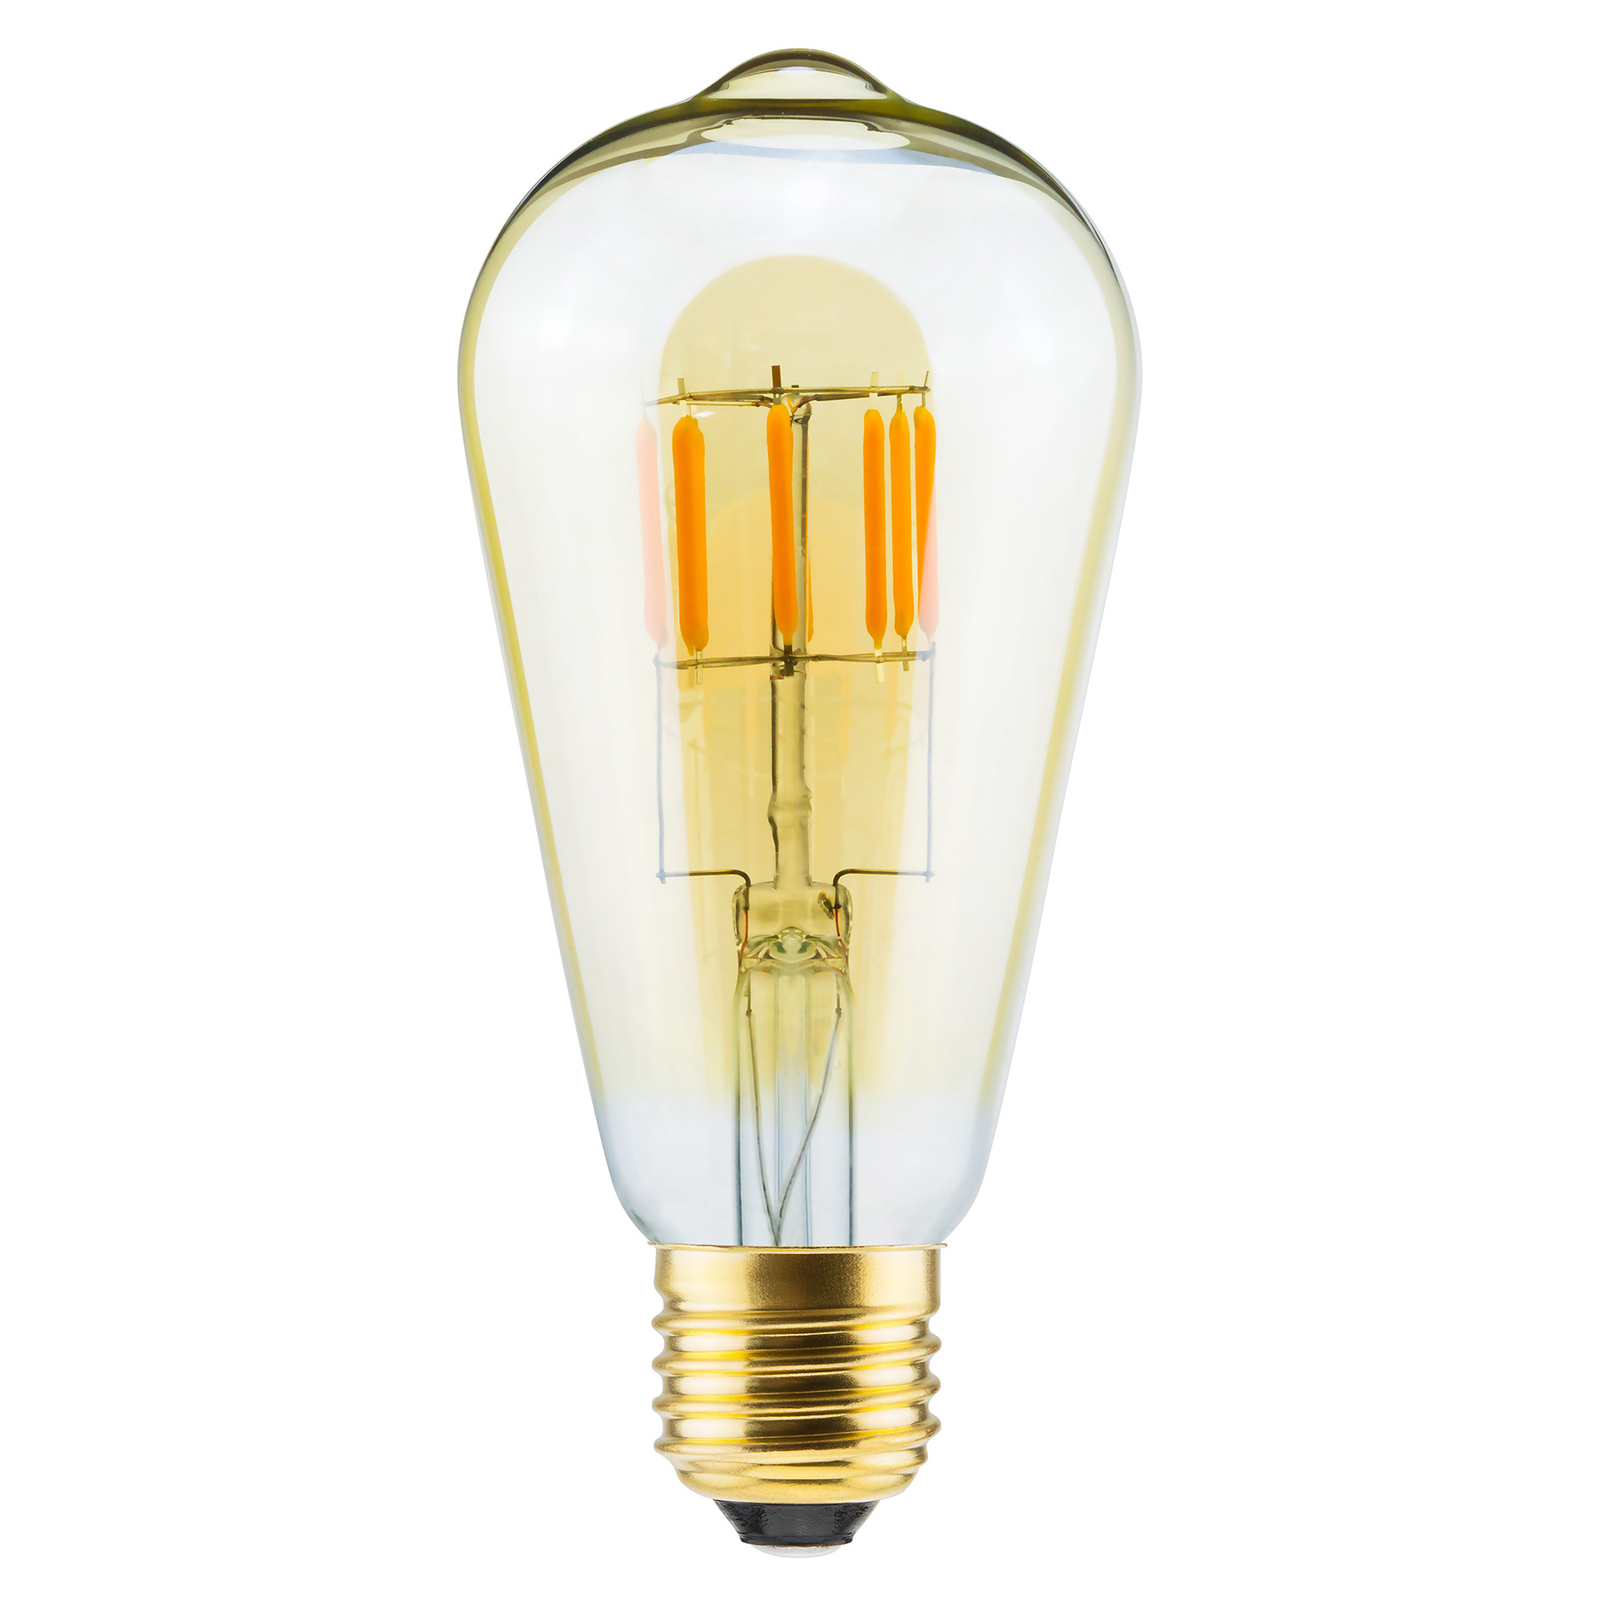 Ongedaan maken scherp omringen SEGULA LED lamp 24V E27 6W rustiek 919 dimbaar | Lampen24.nl